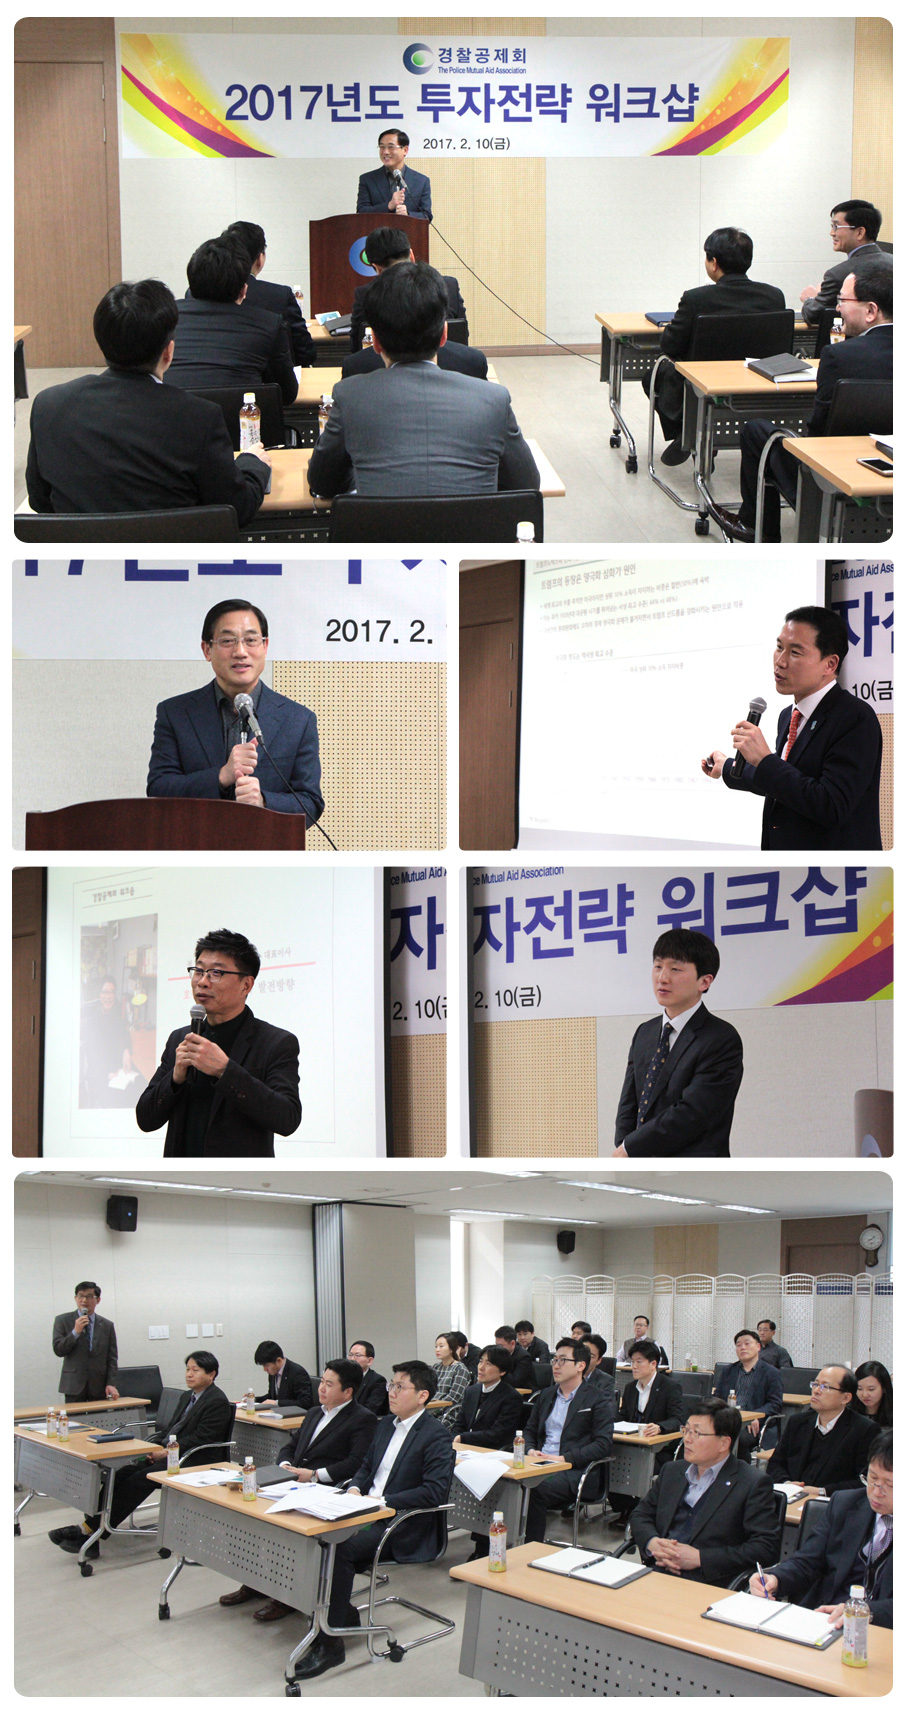 경찰공제회, 2017년도 투자전략 워크샵 개최 사진